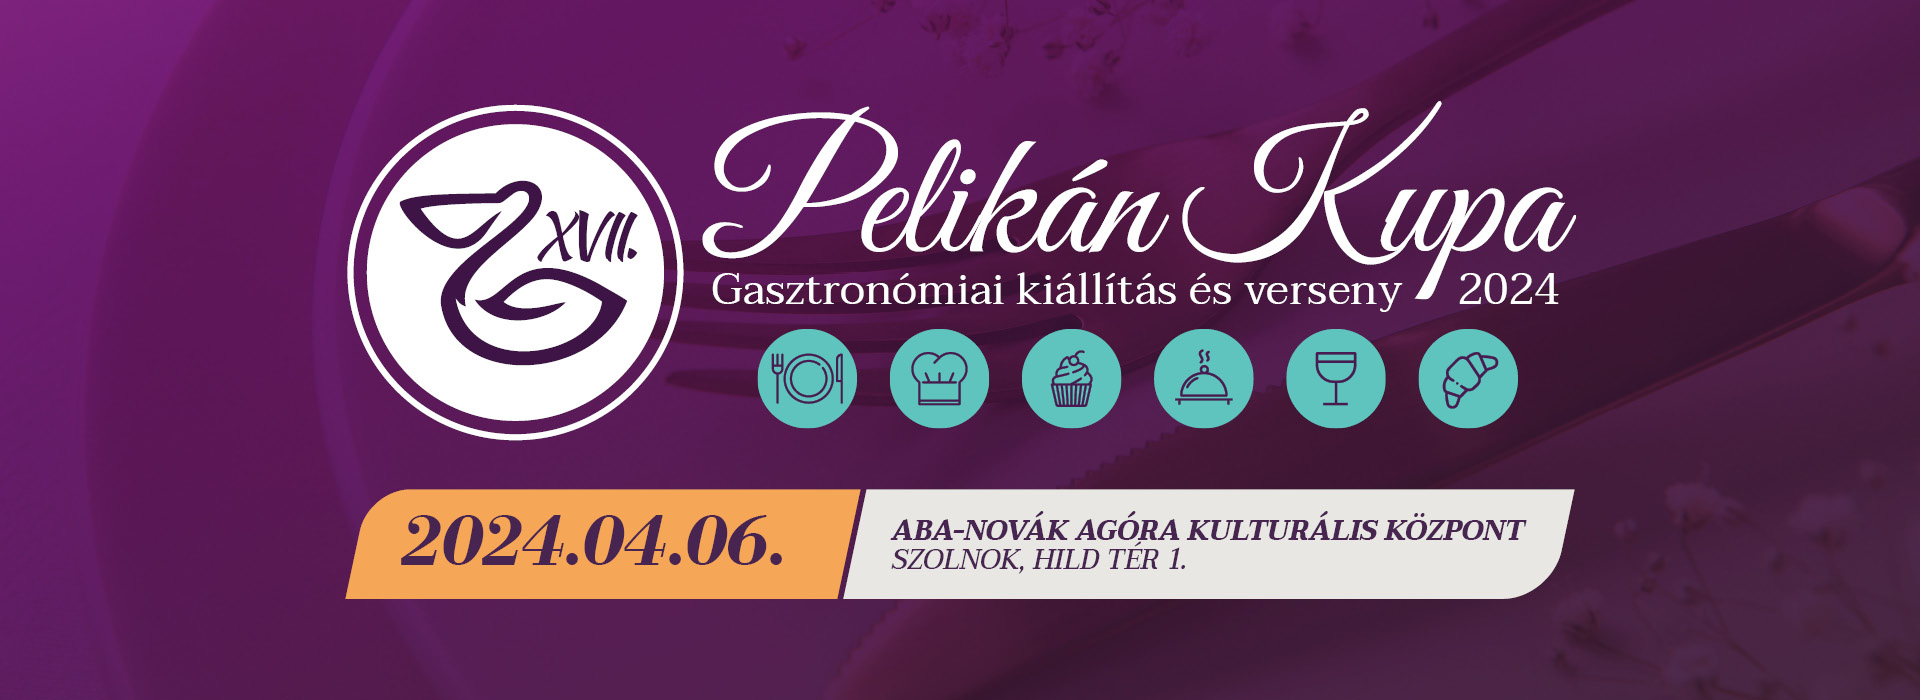 XVII_pelikan_kupa_weblap banner